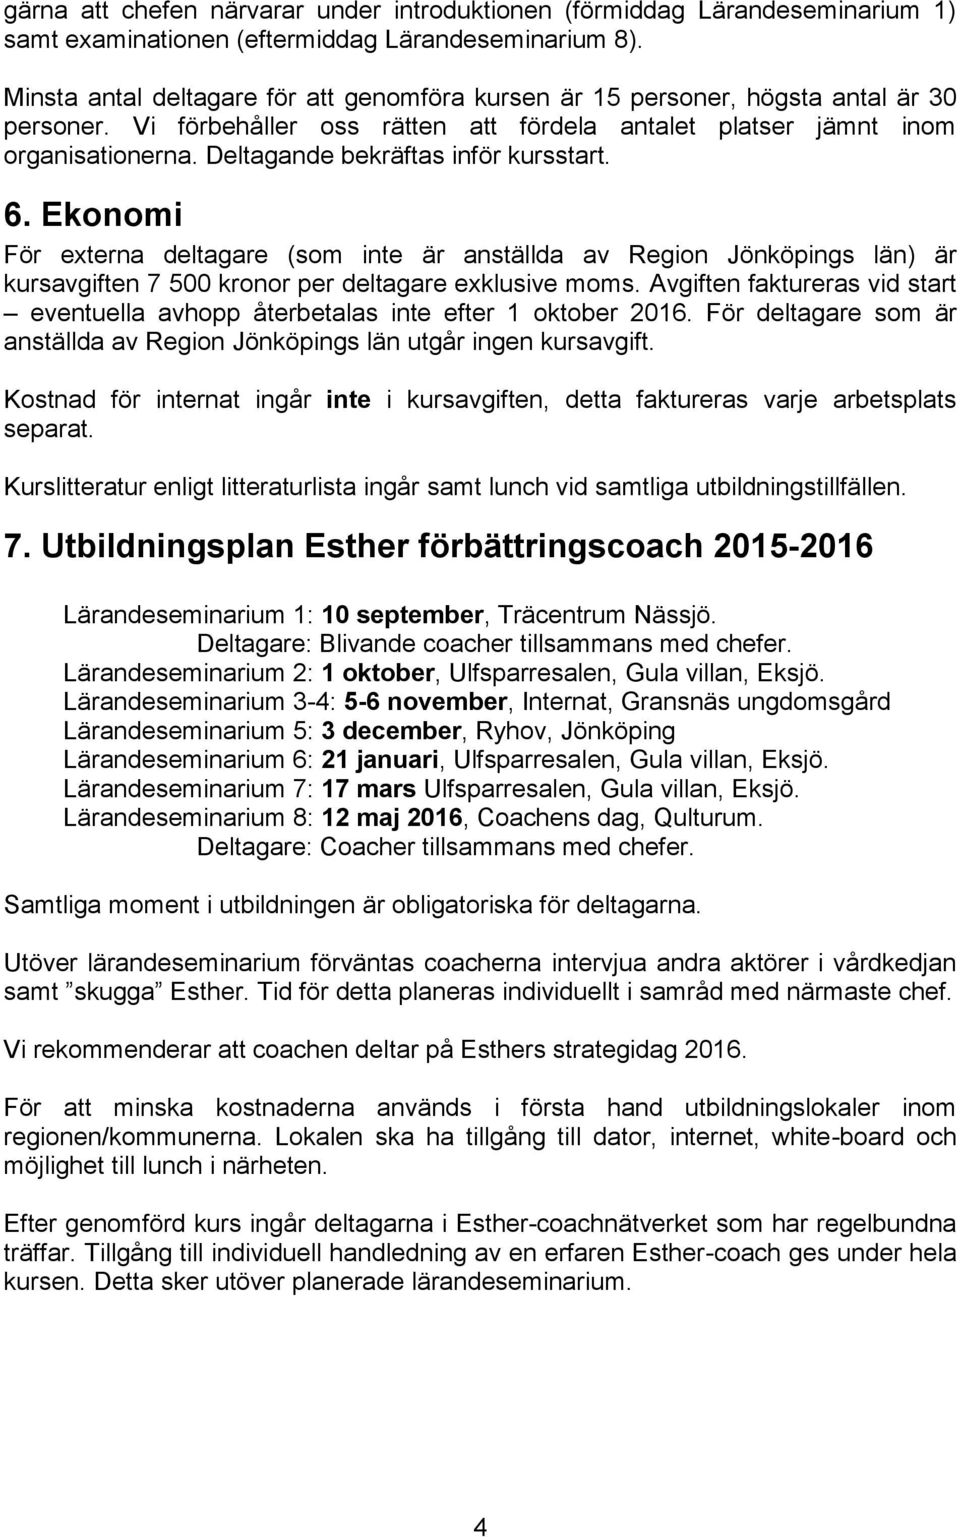 Deltagande bekräftas inför kursstart. 6. Ekonomi För externa deltagare (som inte är anställda av Region Jönköpings län) är kursavgiften 7 500 kronor per deltagare exklusive moms.